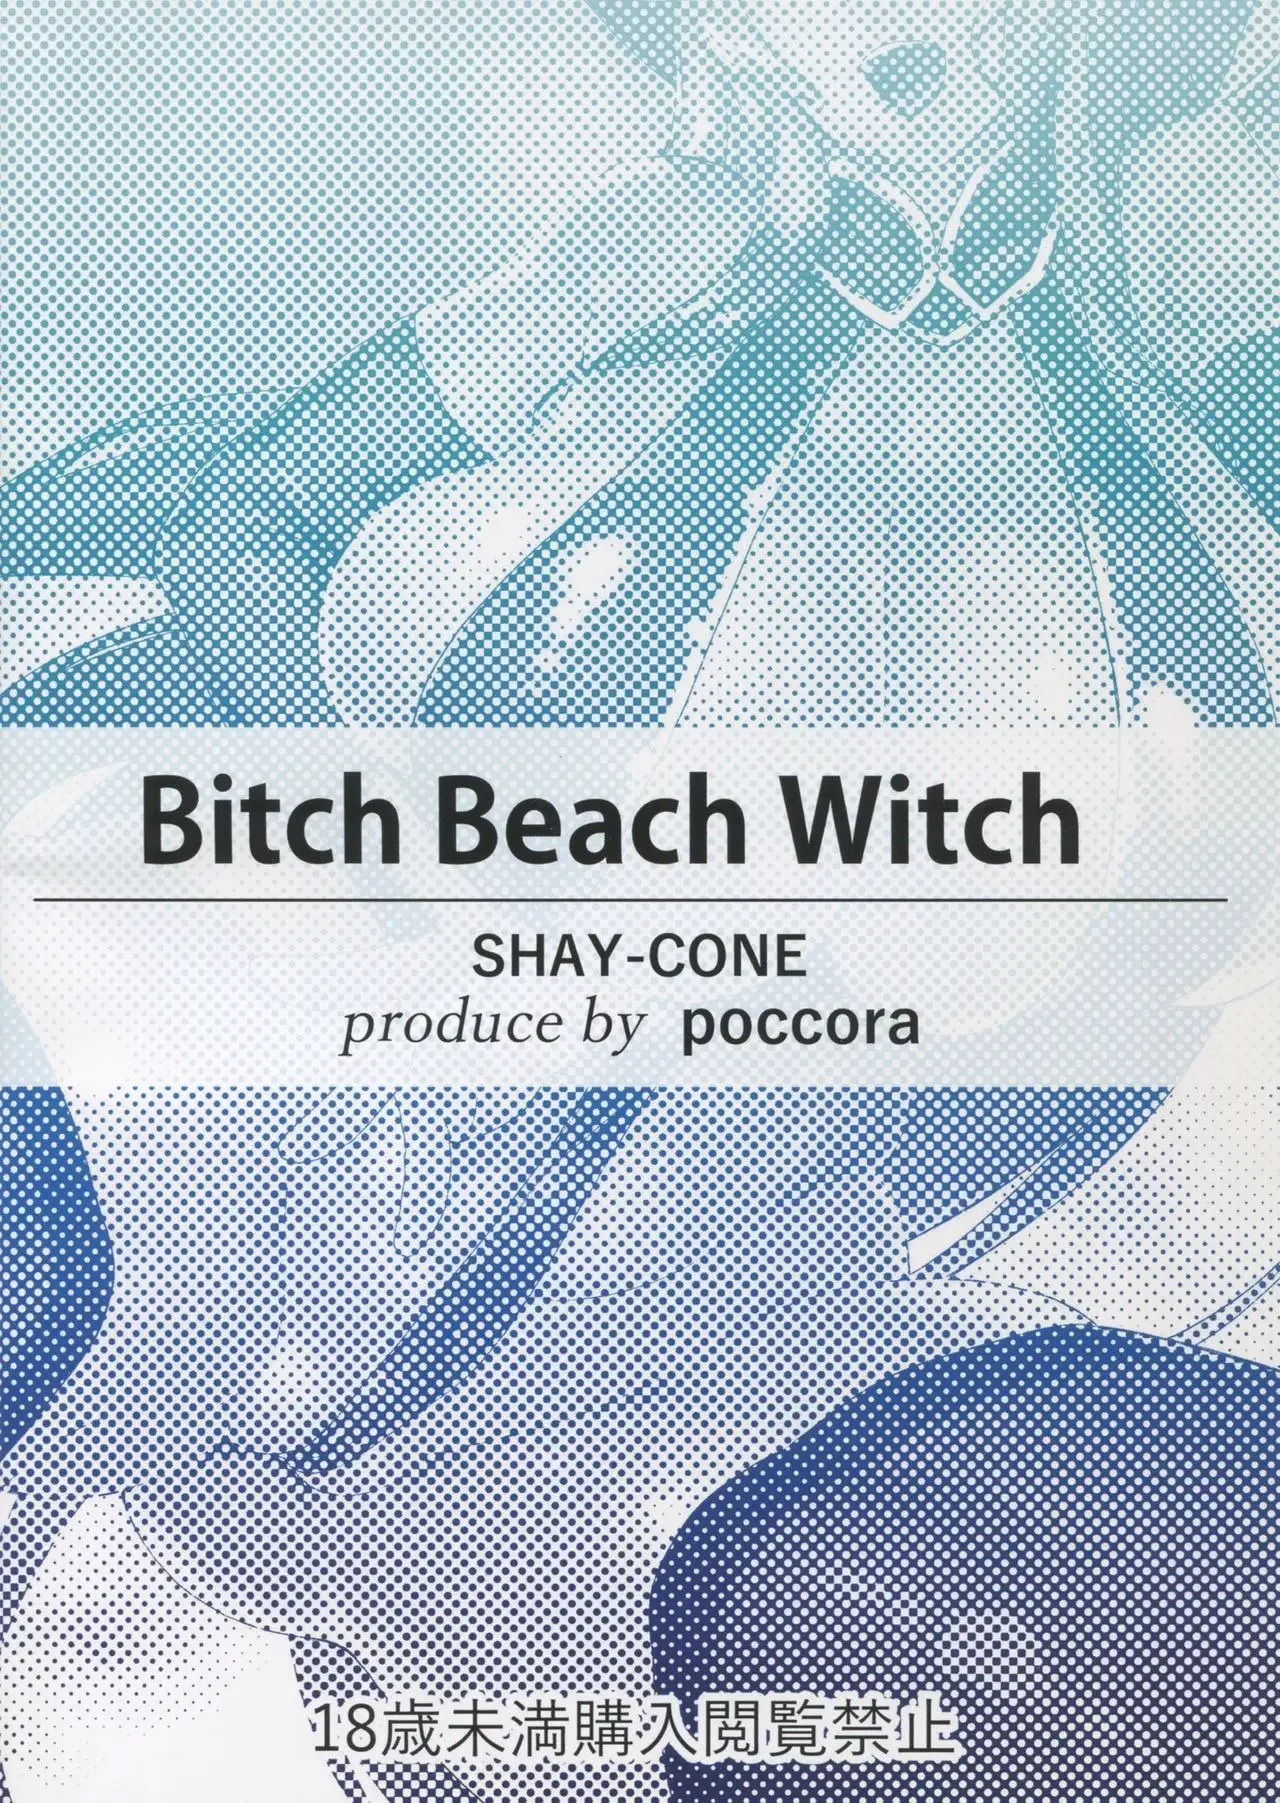 Bitch Beach Witch